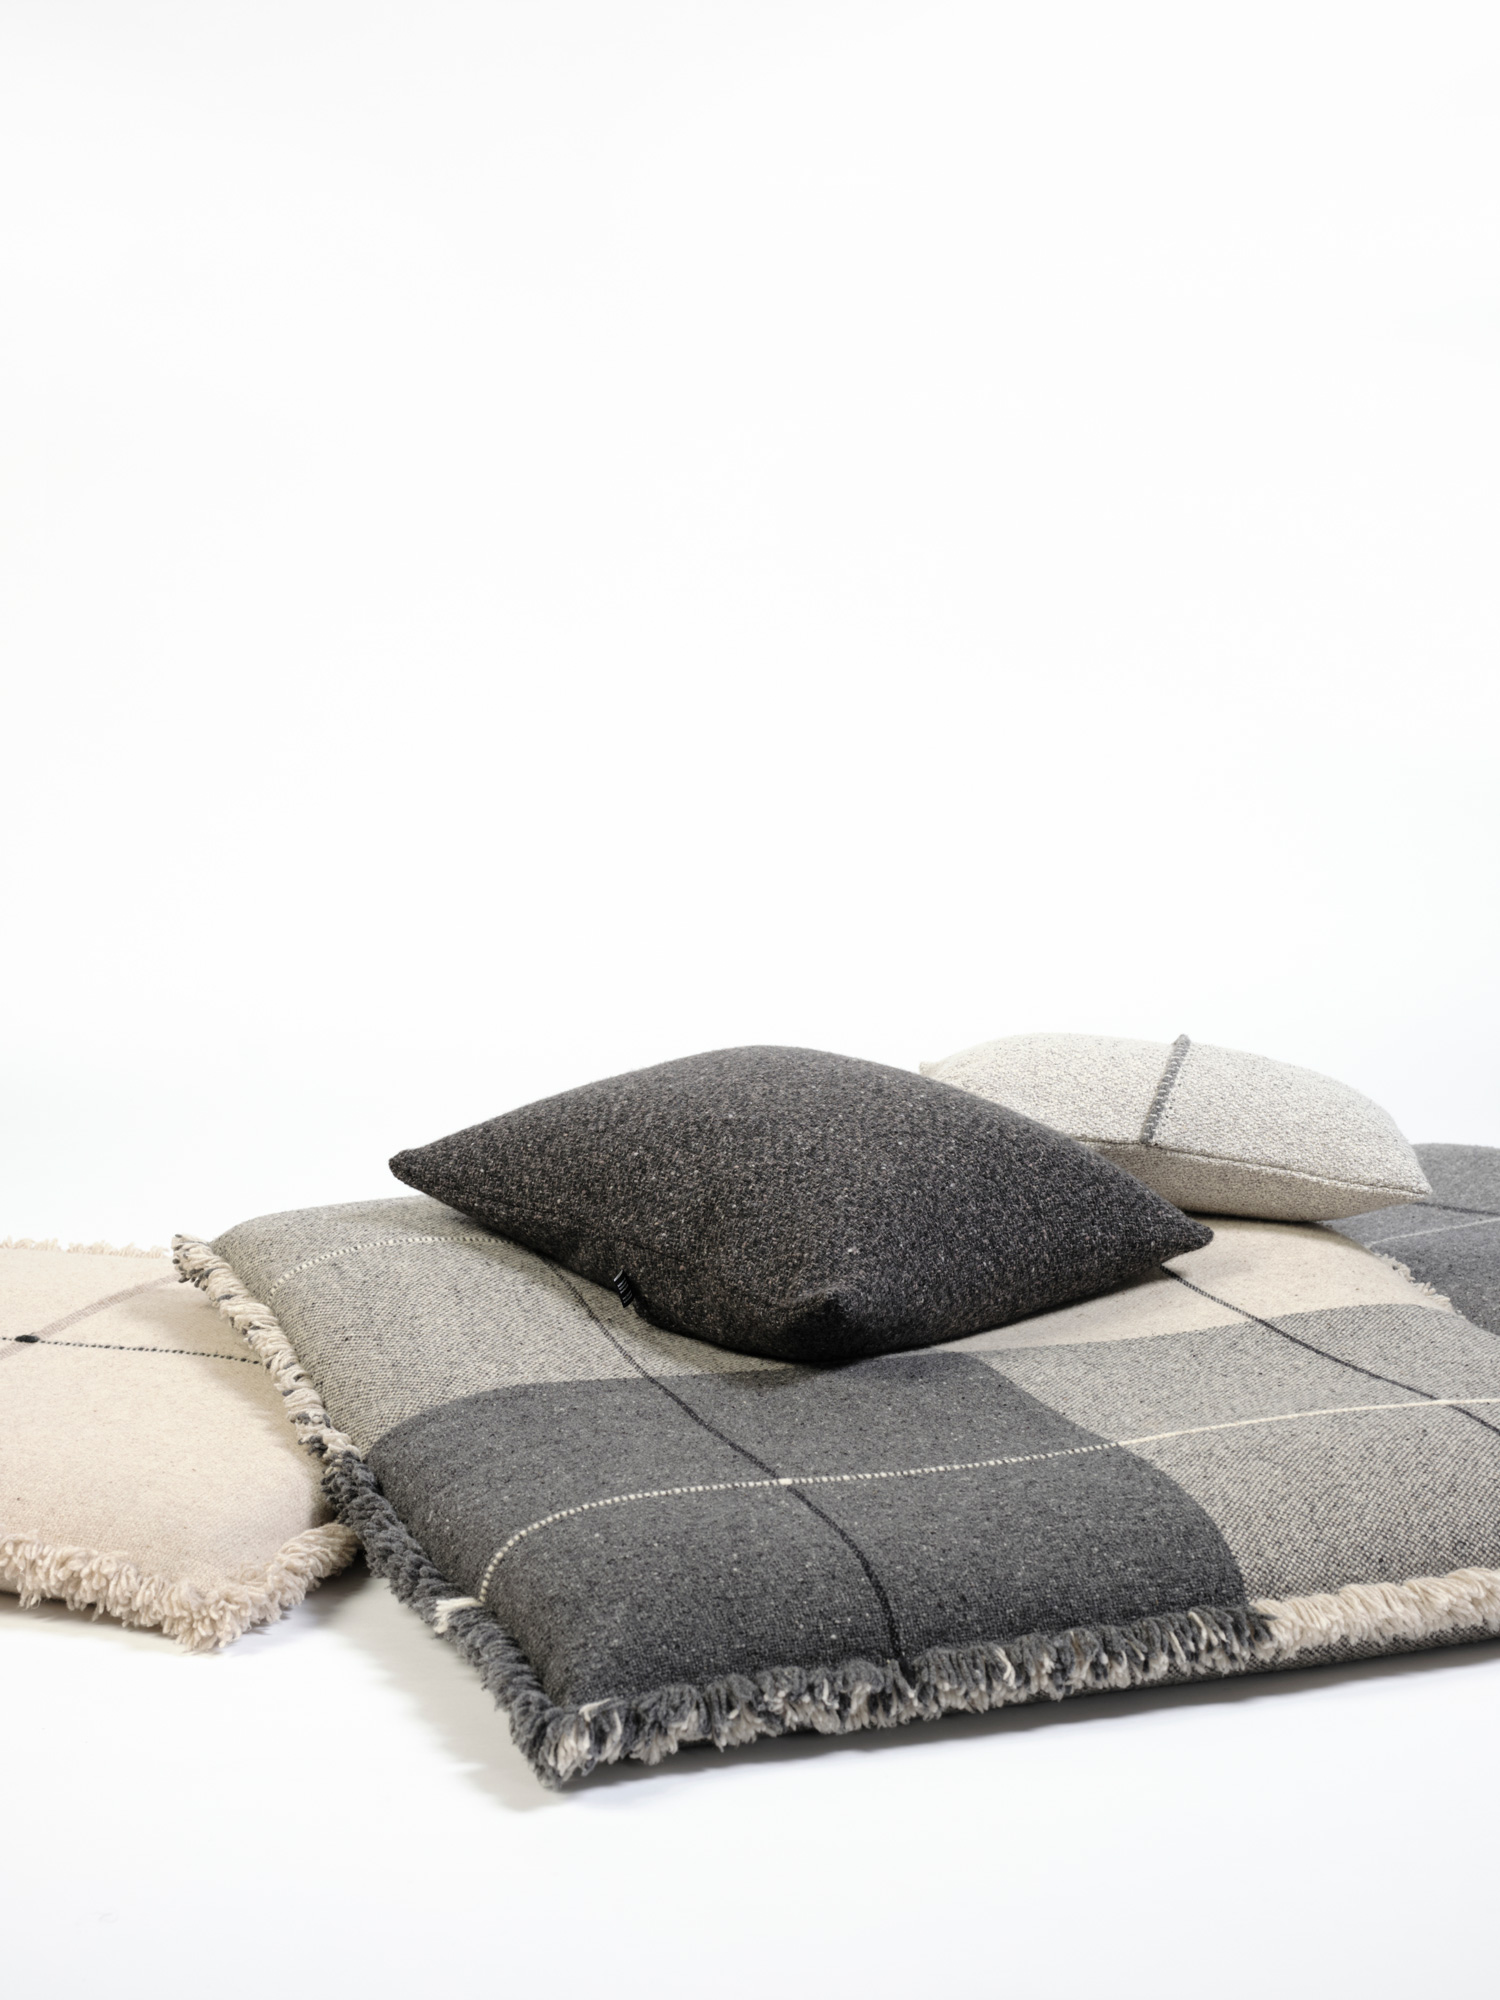 Cojines de suelo en lana merino en cuadros grises oscuros y claros